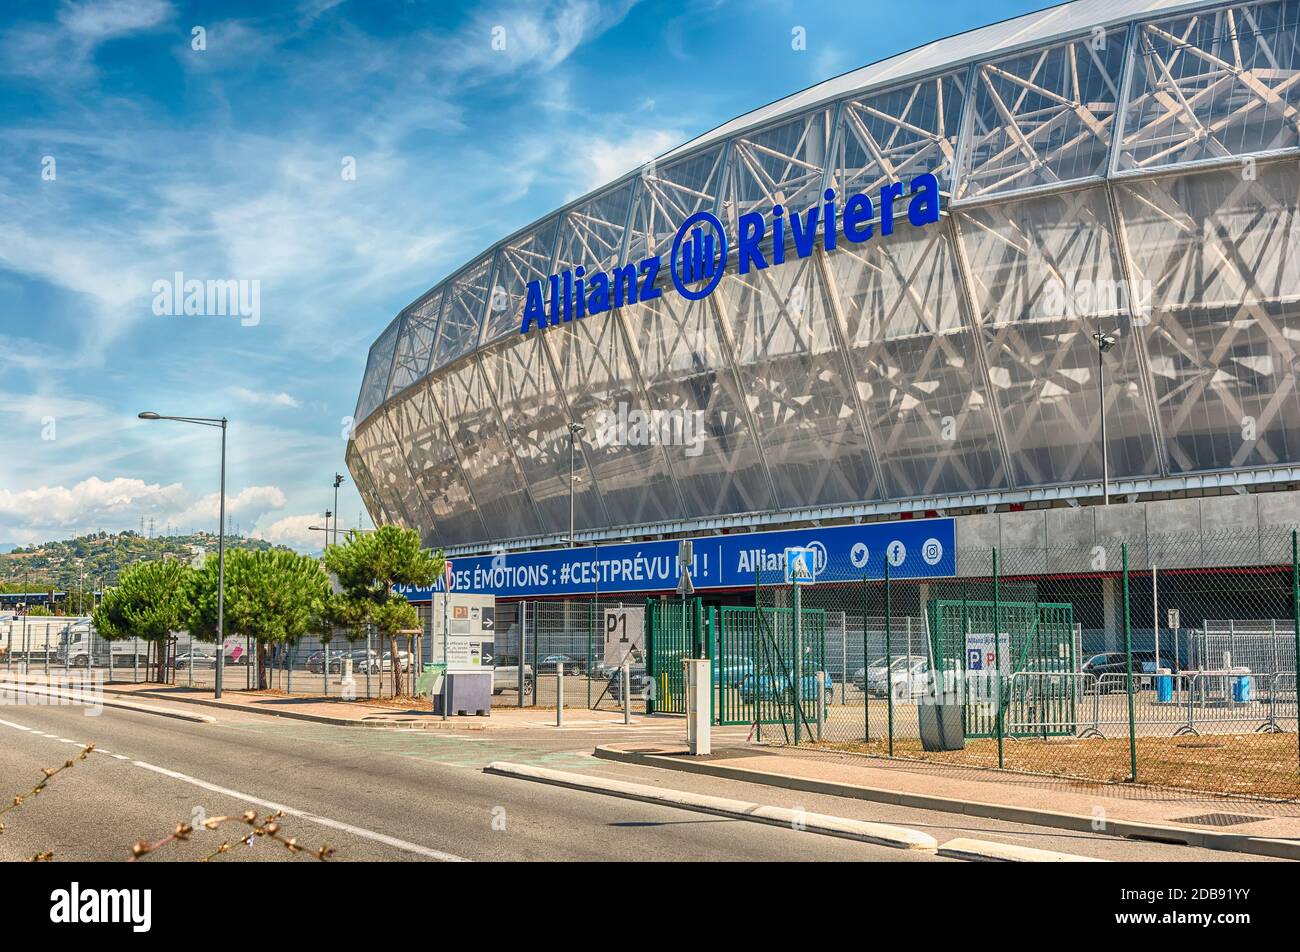 NIZZA, FRANCIA - AGOSTO 16: Veduta esterna dello Stade de Nice della  Riviera di Allianz, Costa Azzurra, Francia, il 16 agosto 2019. Lo stadio  ospita partite in casa di o Foto stock - Alamy